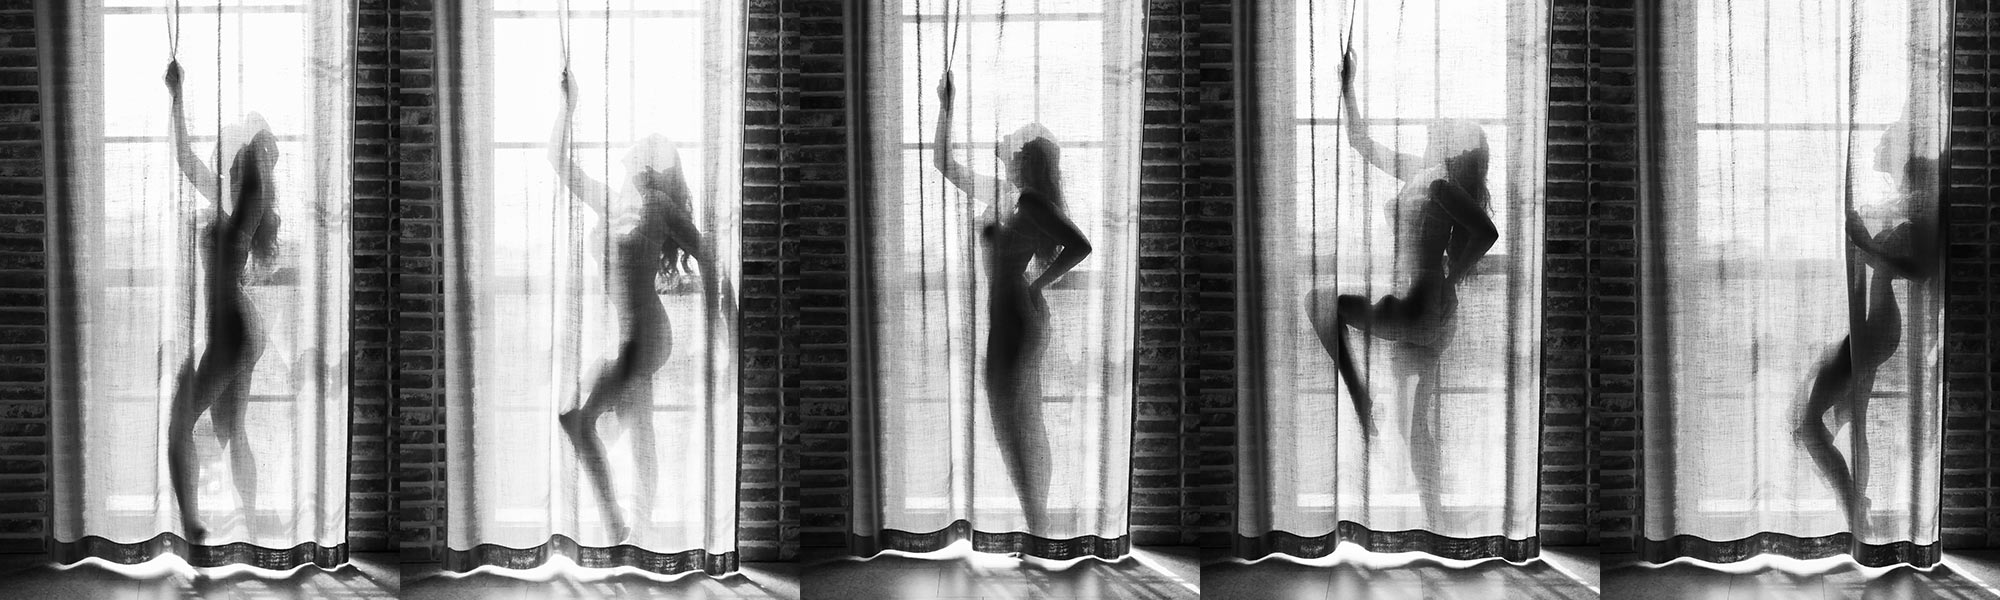 Boudoirfotografering med flera bilder på en kvinna bakom genomlysta gardiner.